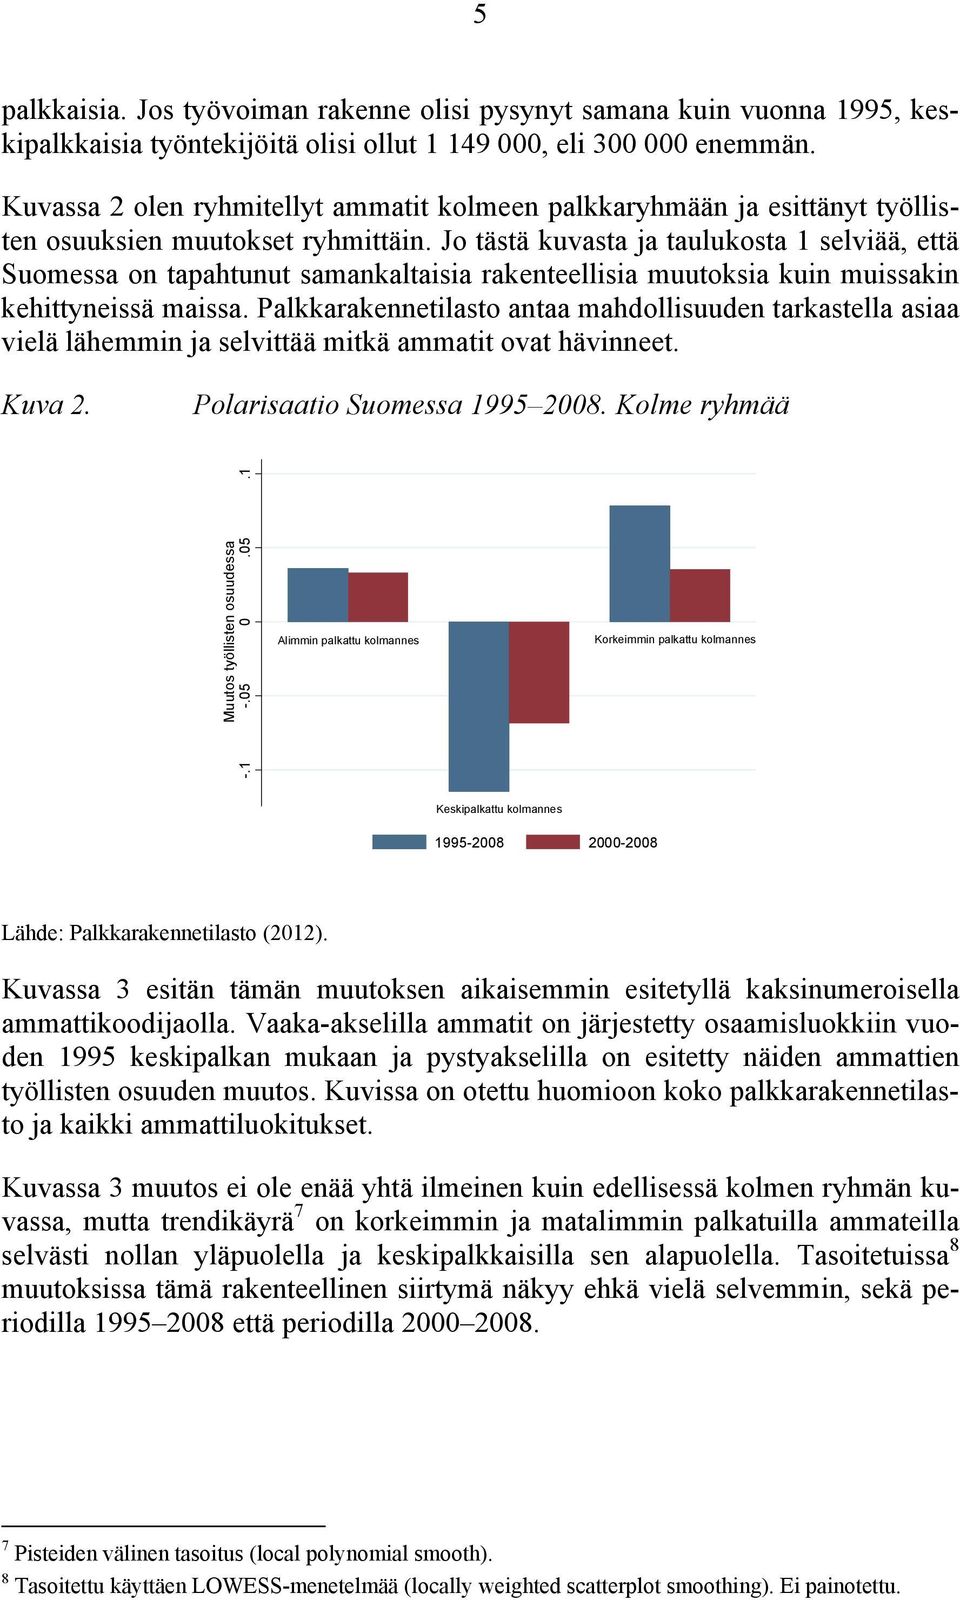 Jo tästä kuvasta ja taulukosta 1 selviää, että Suomessa on tapahtunut samankaltaisia rakenteellisia muutoksia kuin muissakin kehittyneissä maissa.